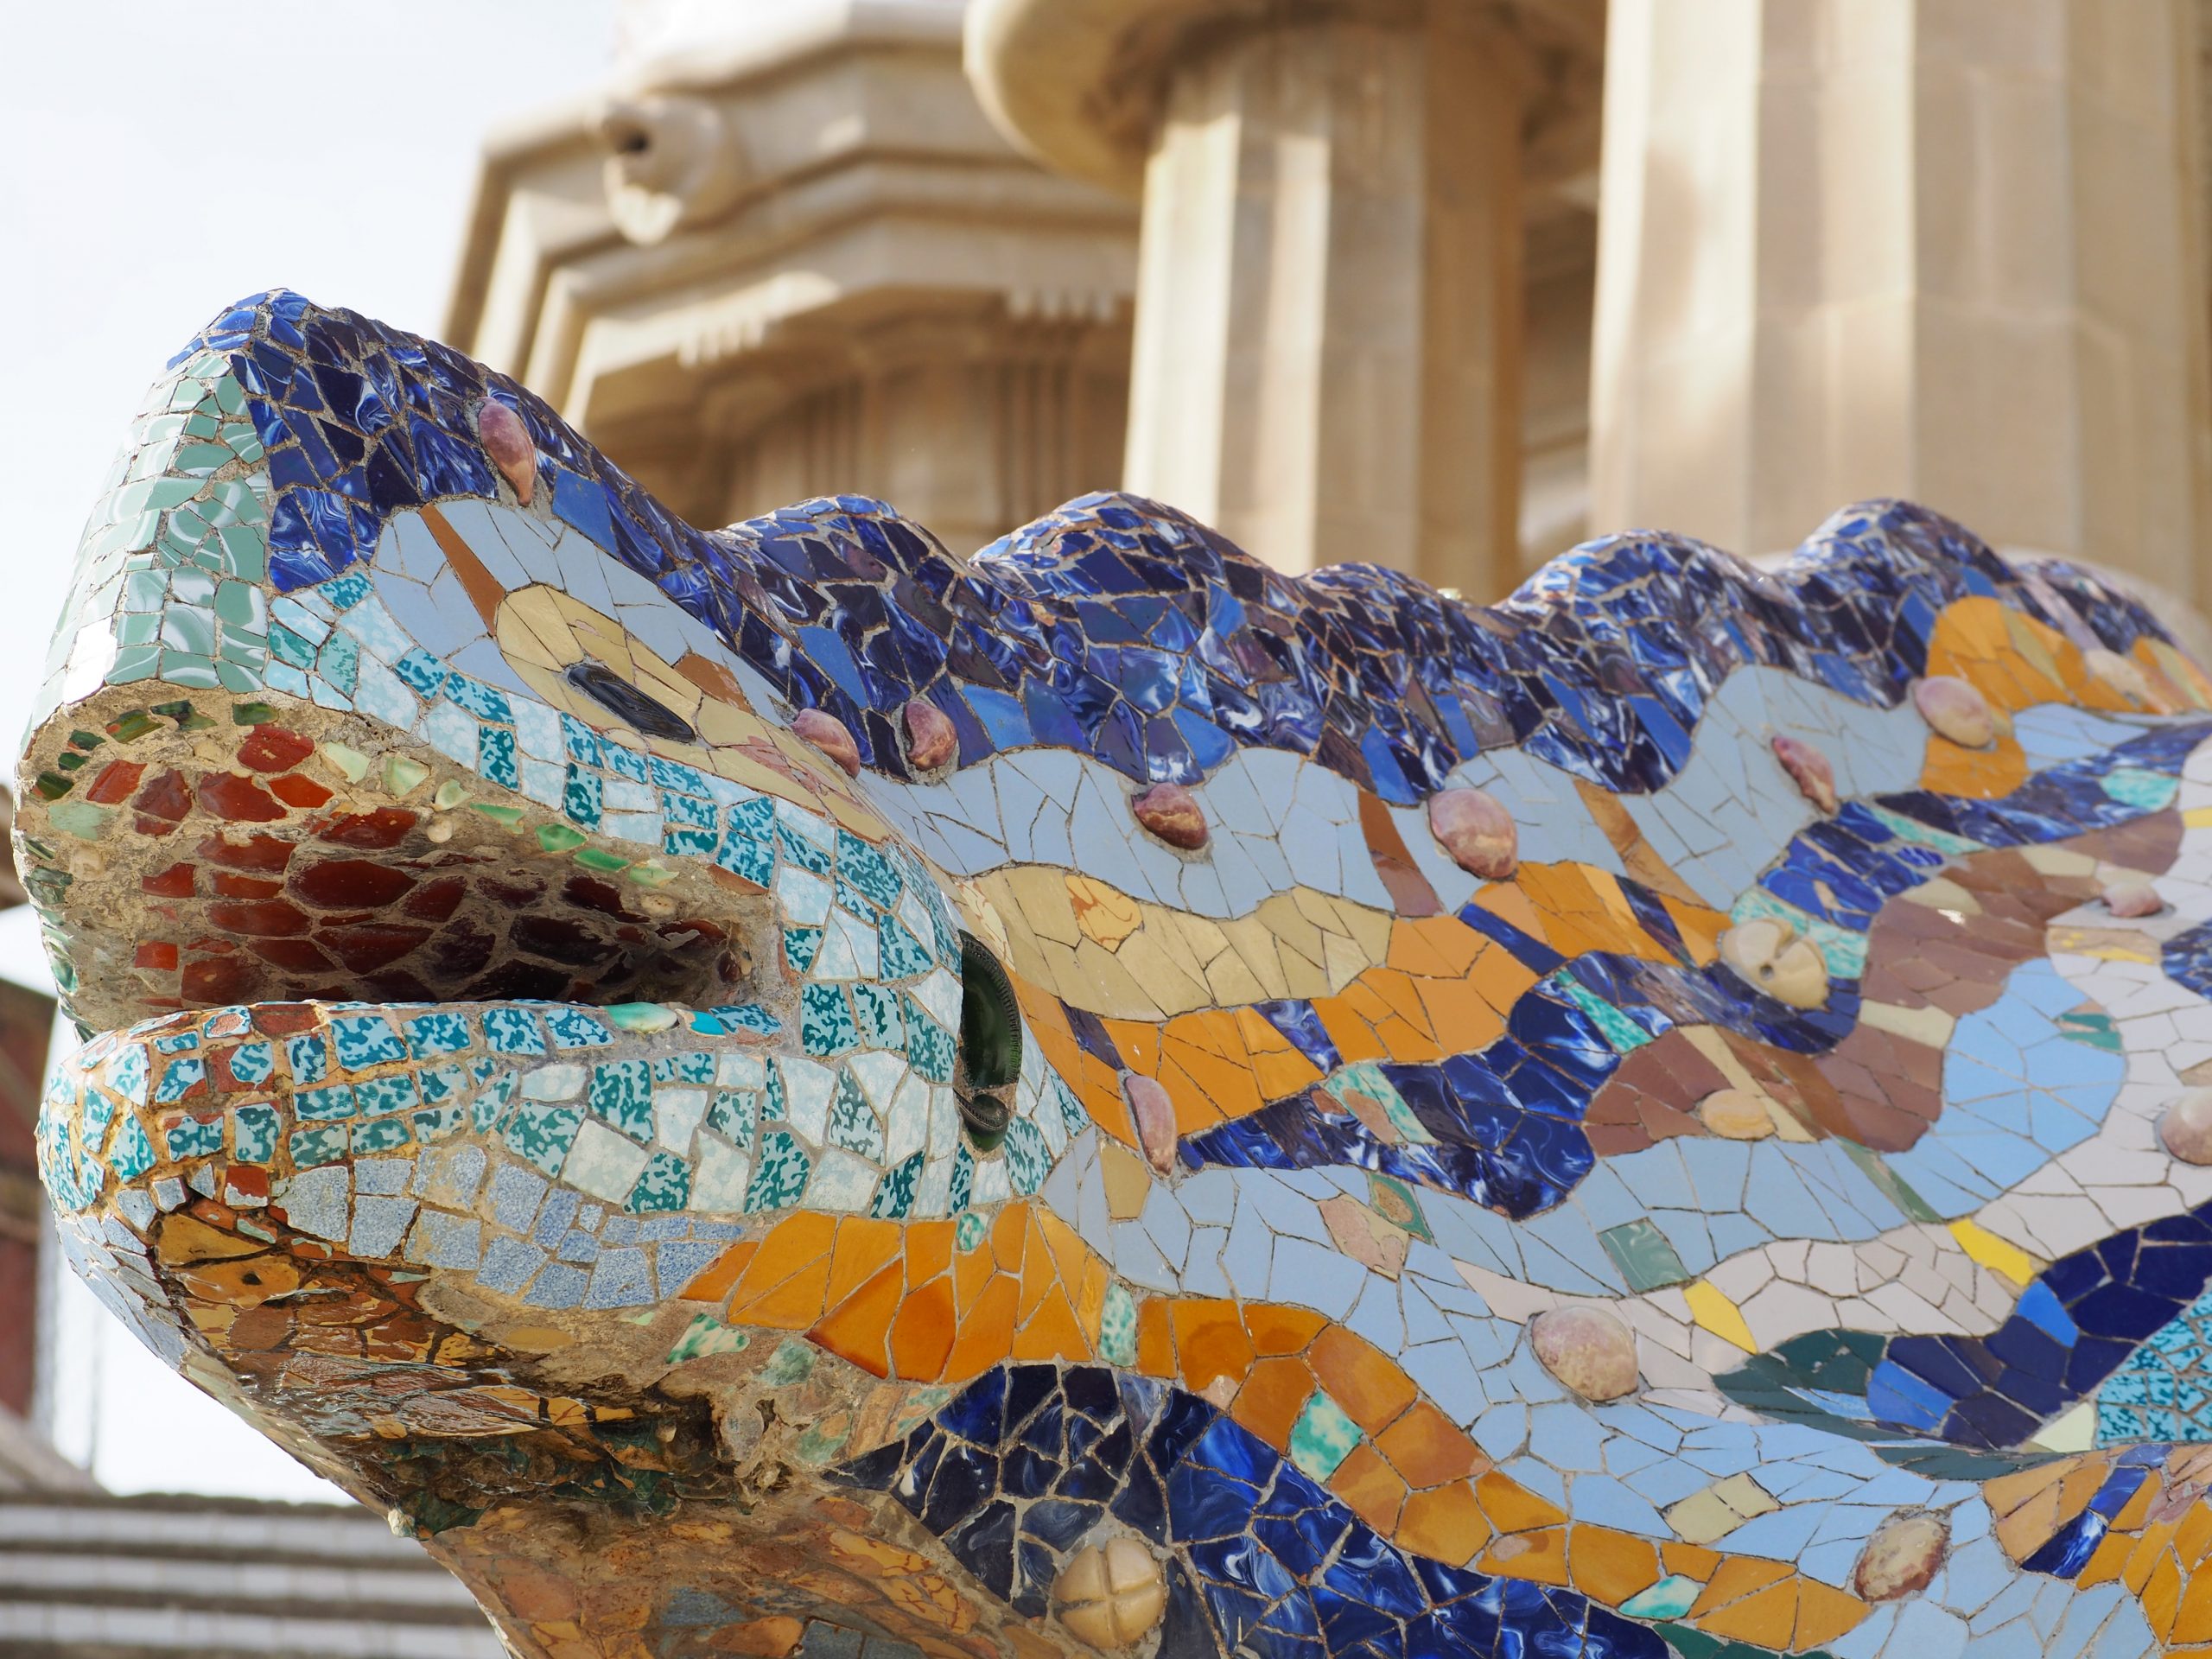 La scultura della salamandra del Park Güell, decorata con mosaici colorati. Barcellona